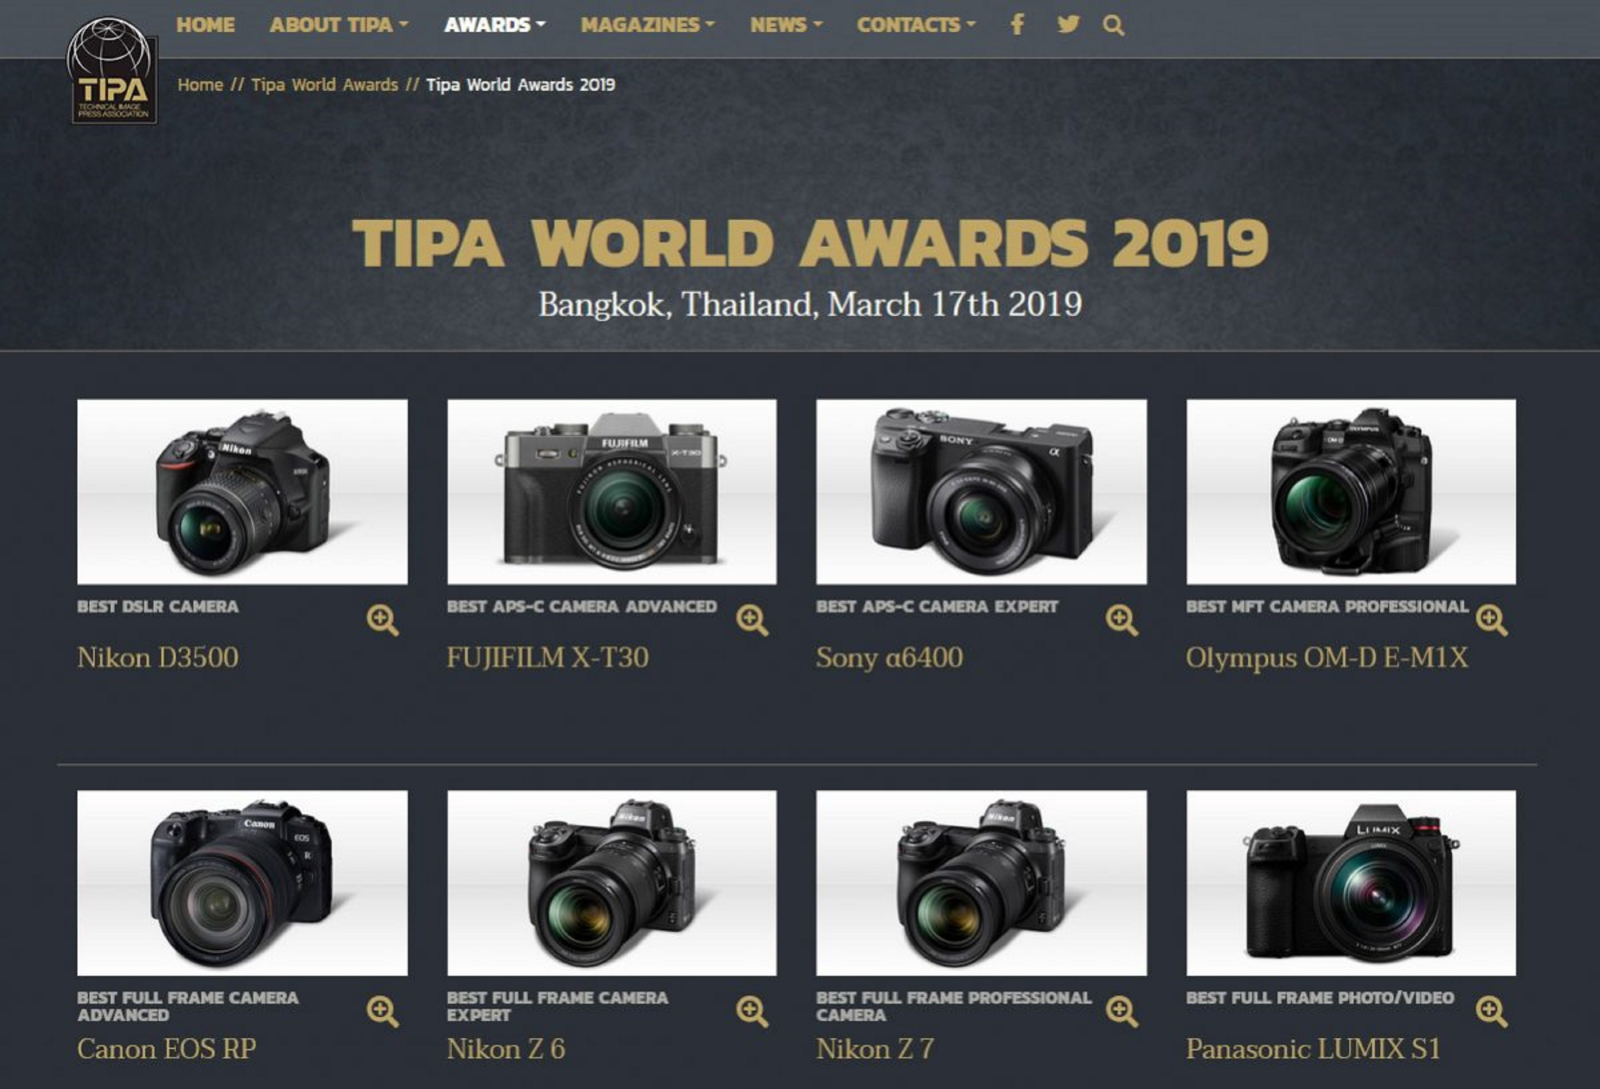 Danh sách máy ảnh xuất sắc nhất năm 2019 do TIPA bình chọn